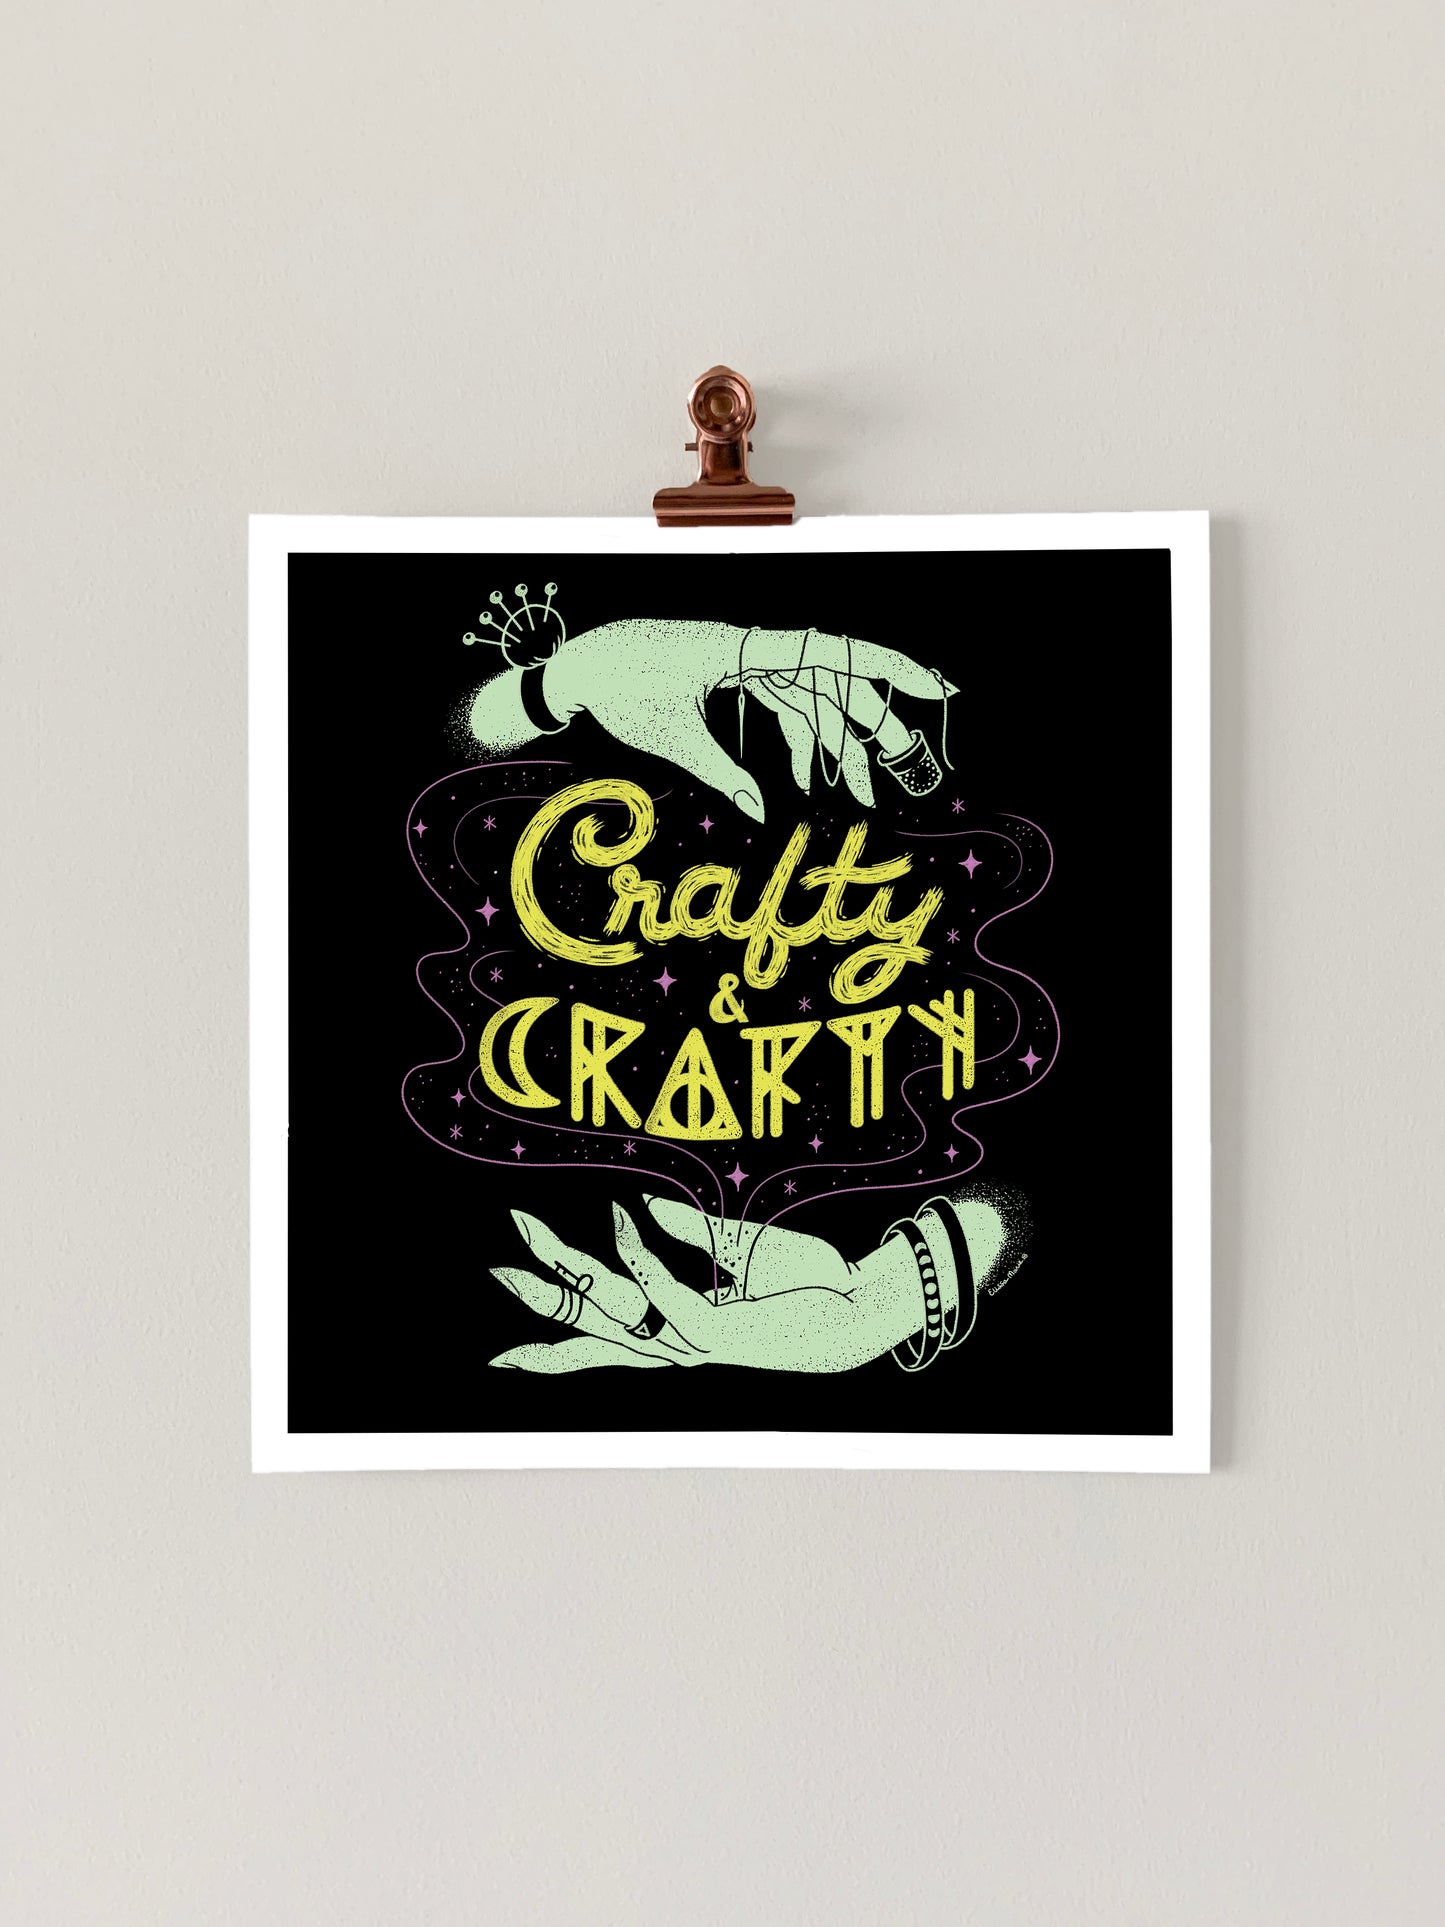 Crafty & Crafty Art Print